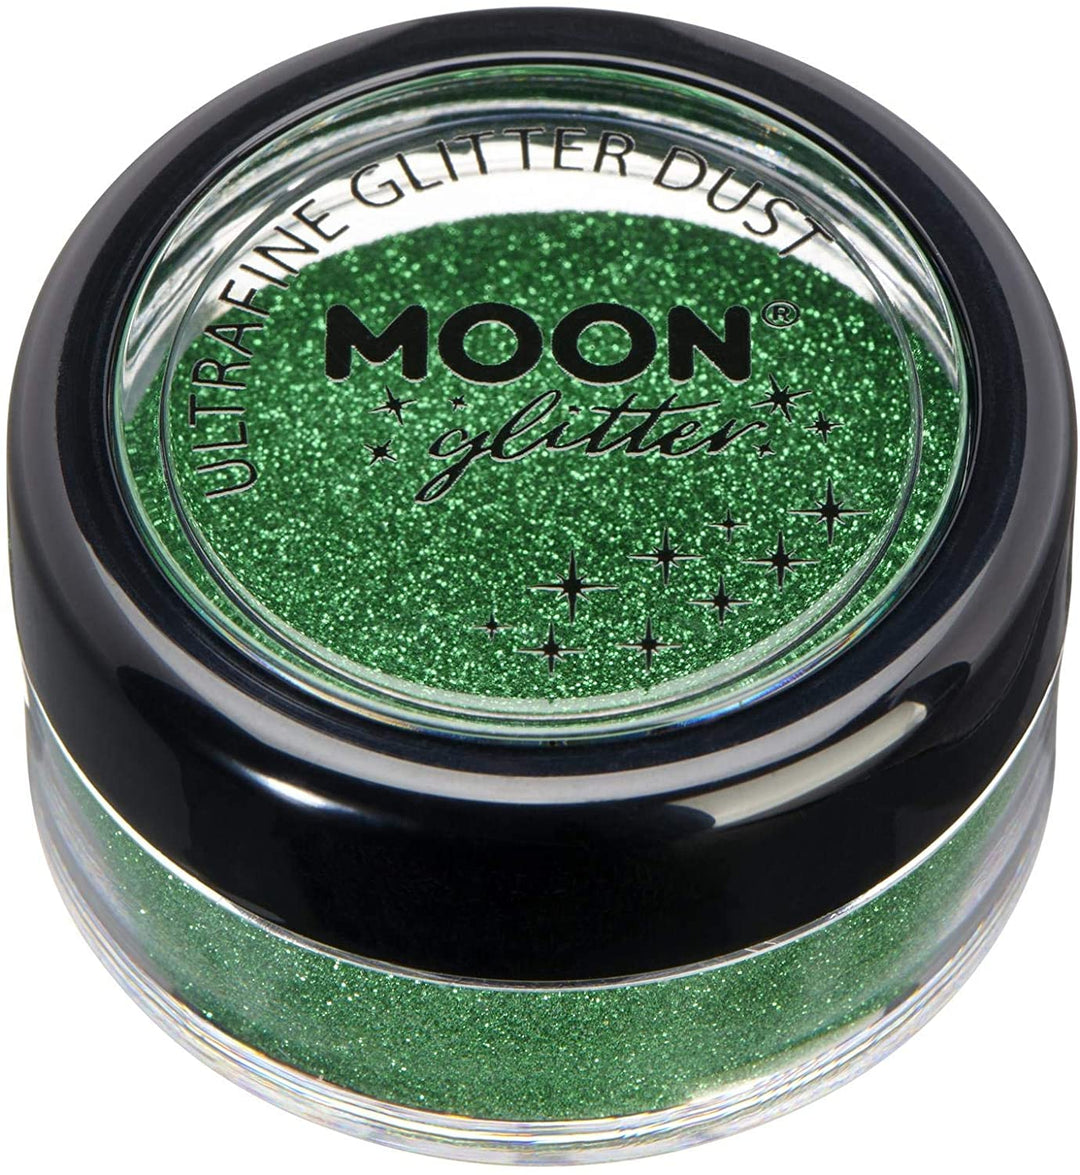 Klassischer ultrafeiner Glitzerstaub von Moon Glitter Green Cosmetic Festival Makeup Glitter für Gesicht, Körper, Nägel, Haare, Lippen